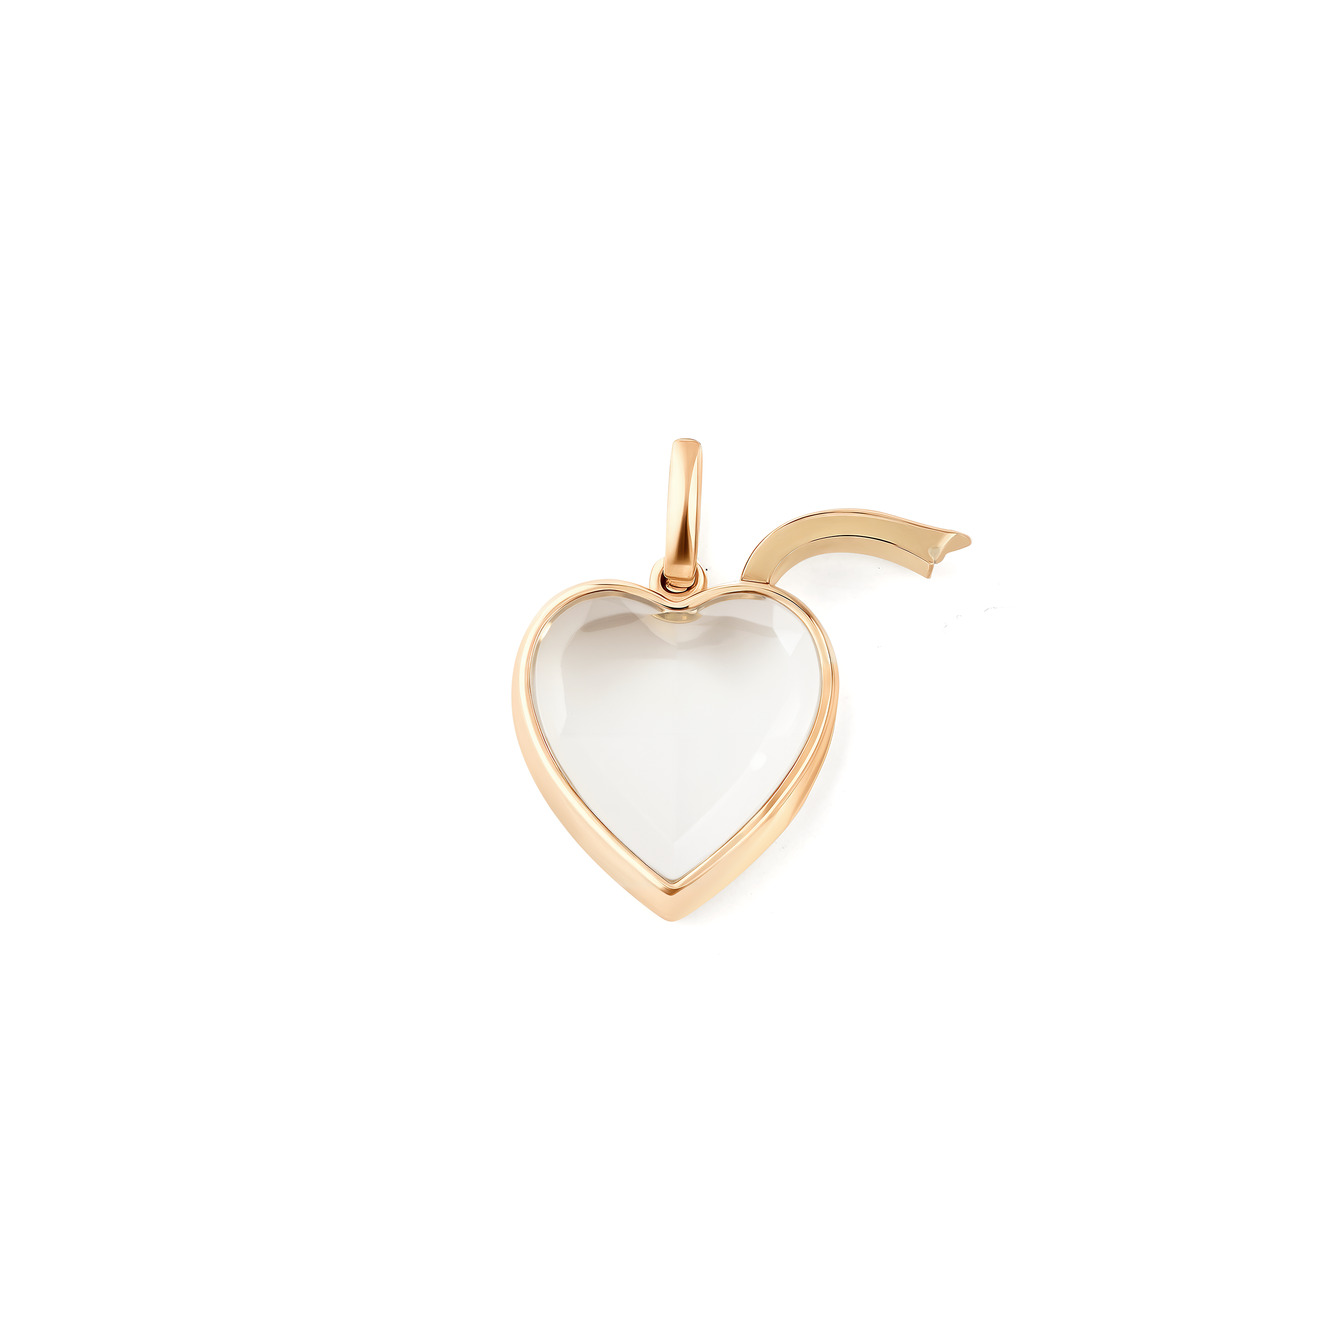 Loquet London Кулон-сердце Locket из золота loquet london кулон locket в виде сердца из белого золота